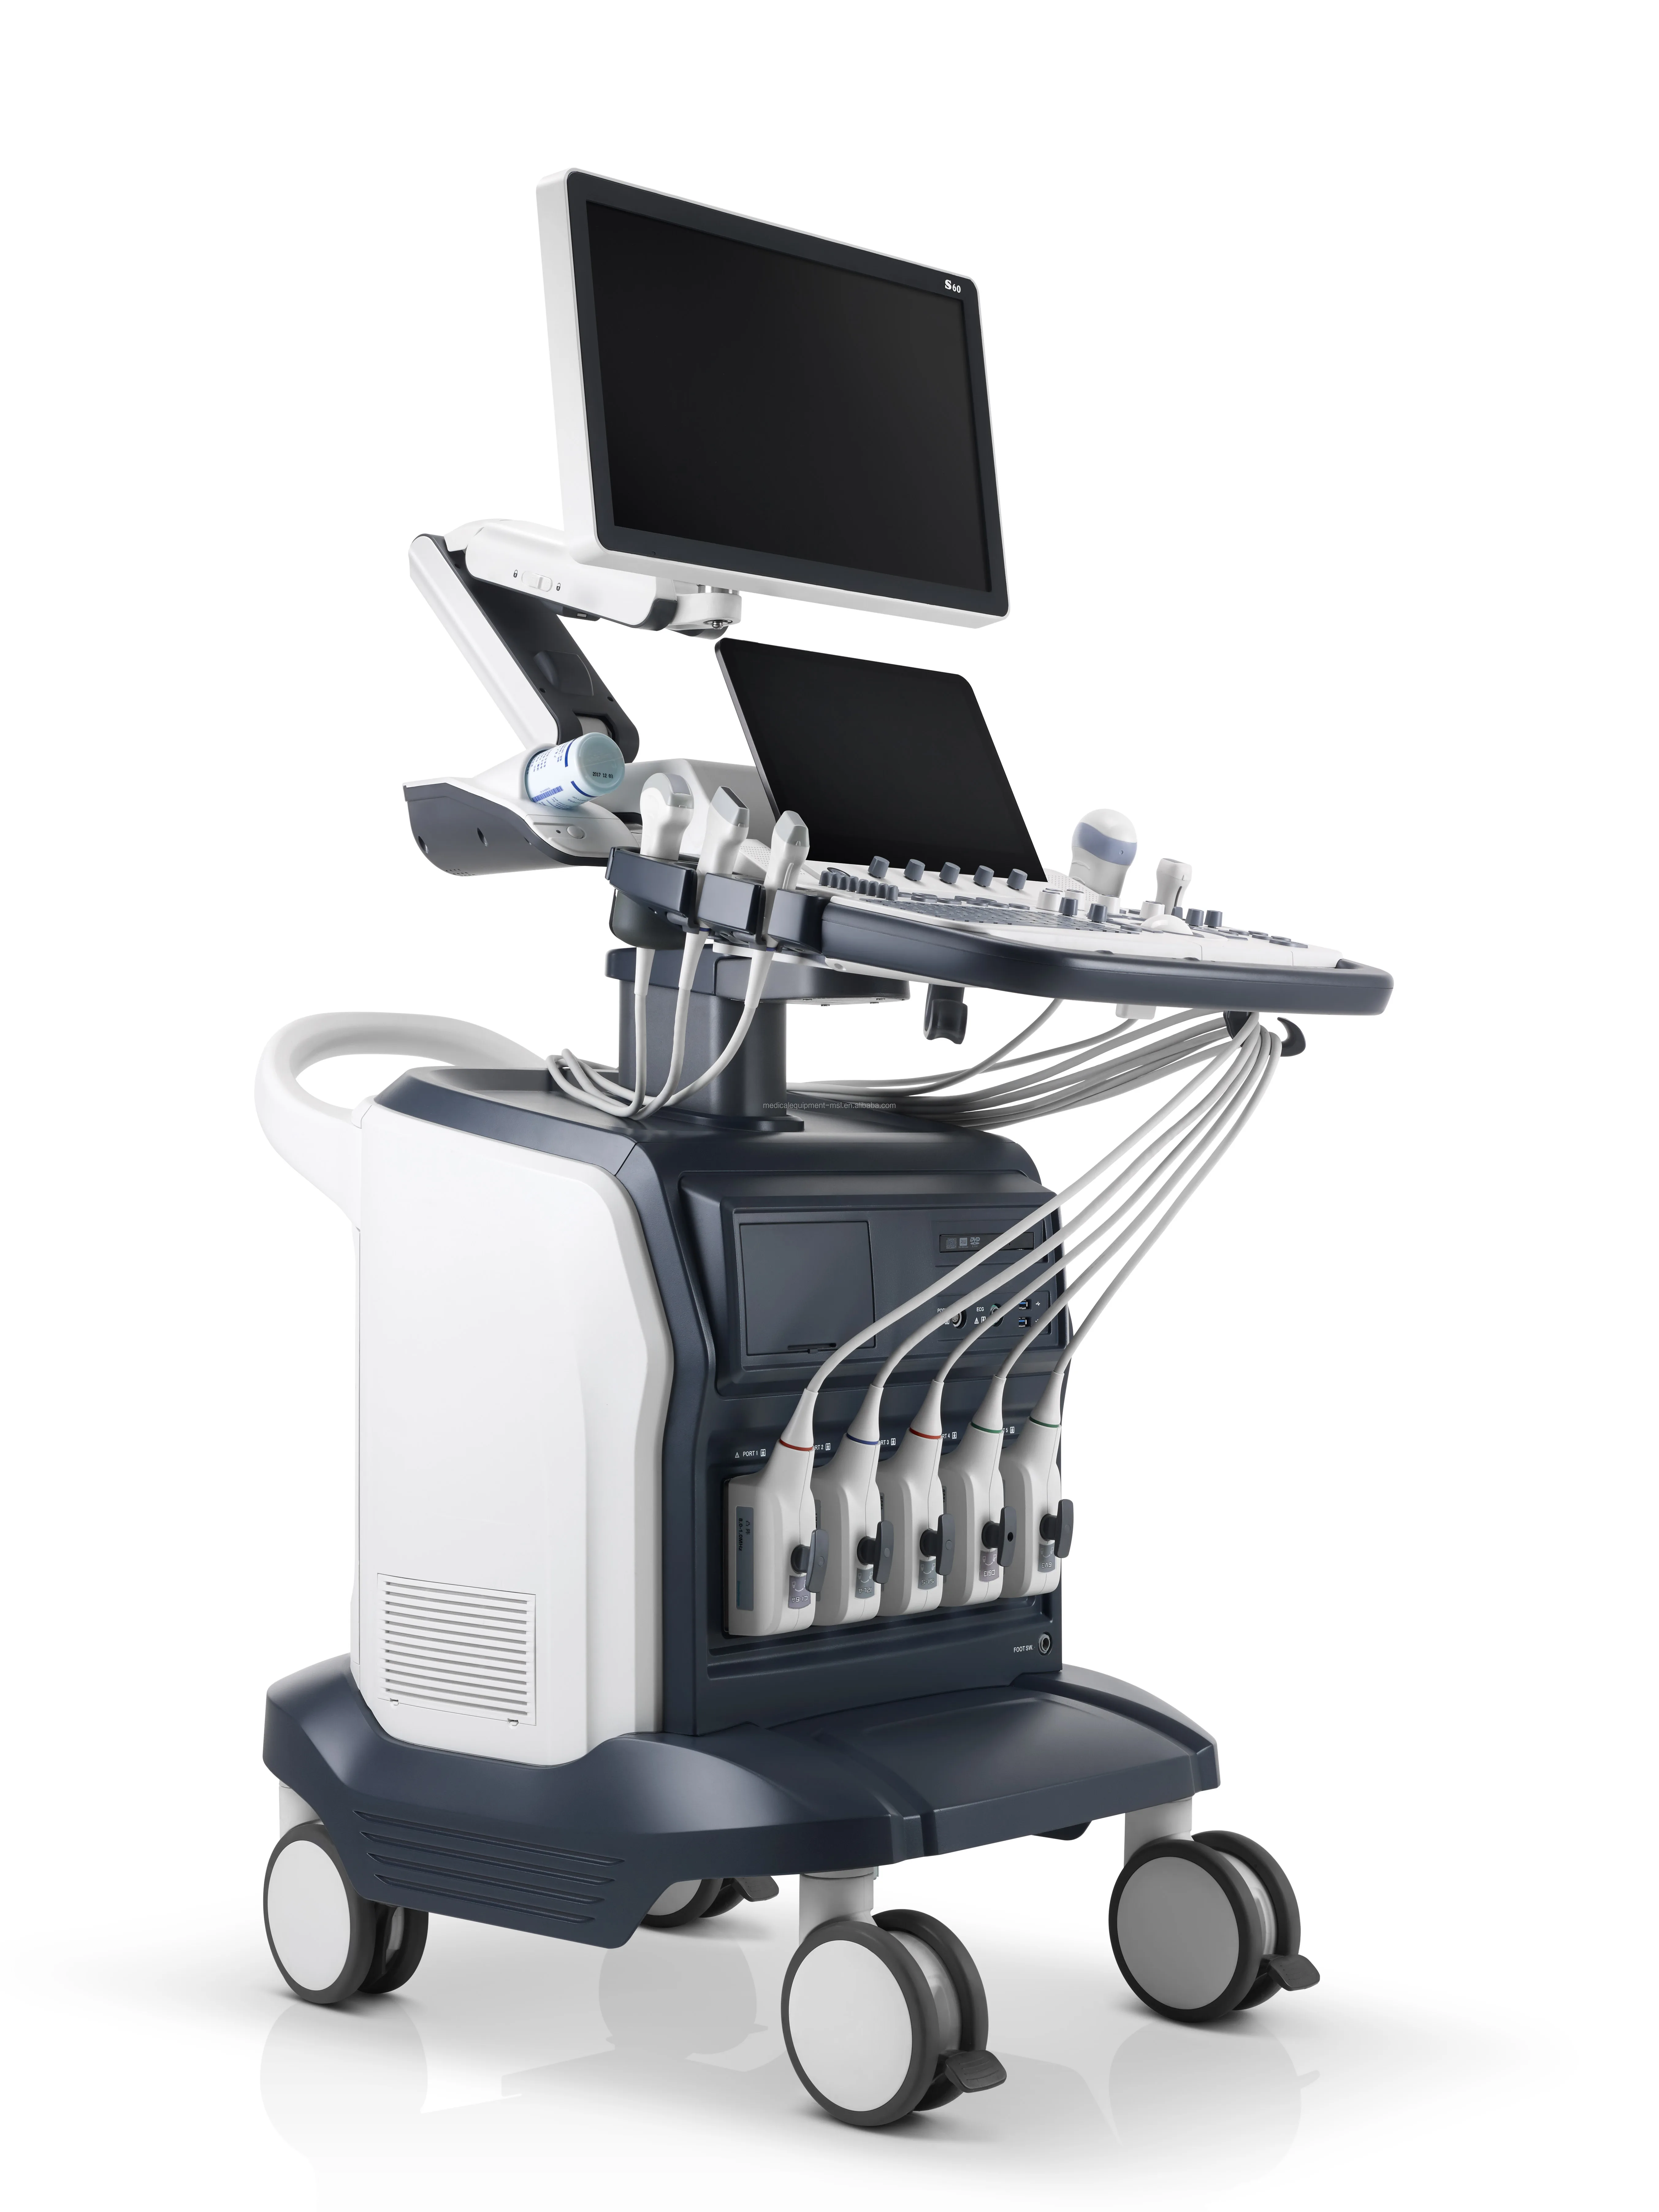 intelligent wis  platform sonoscape p60 s60 ultrasound machine